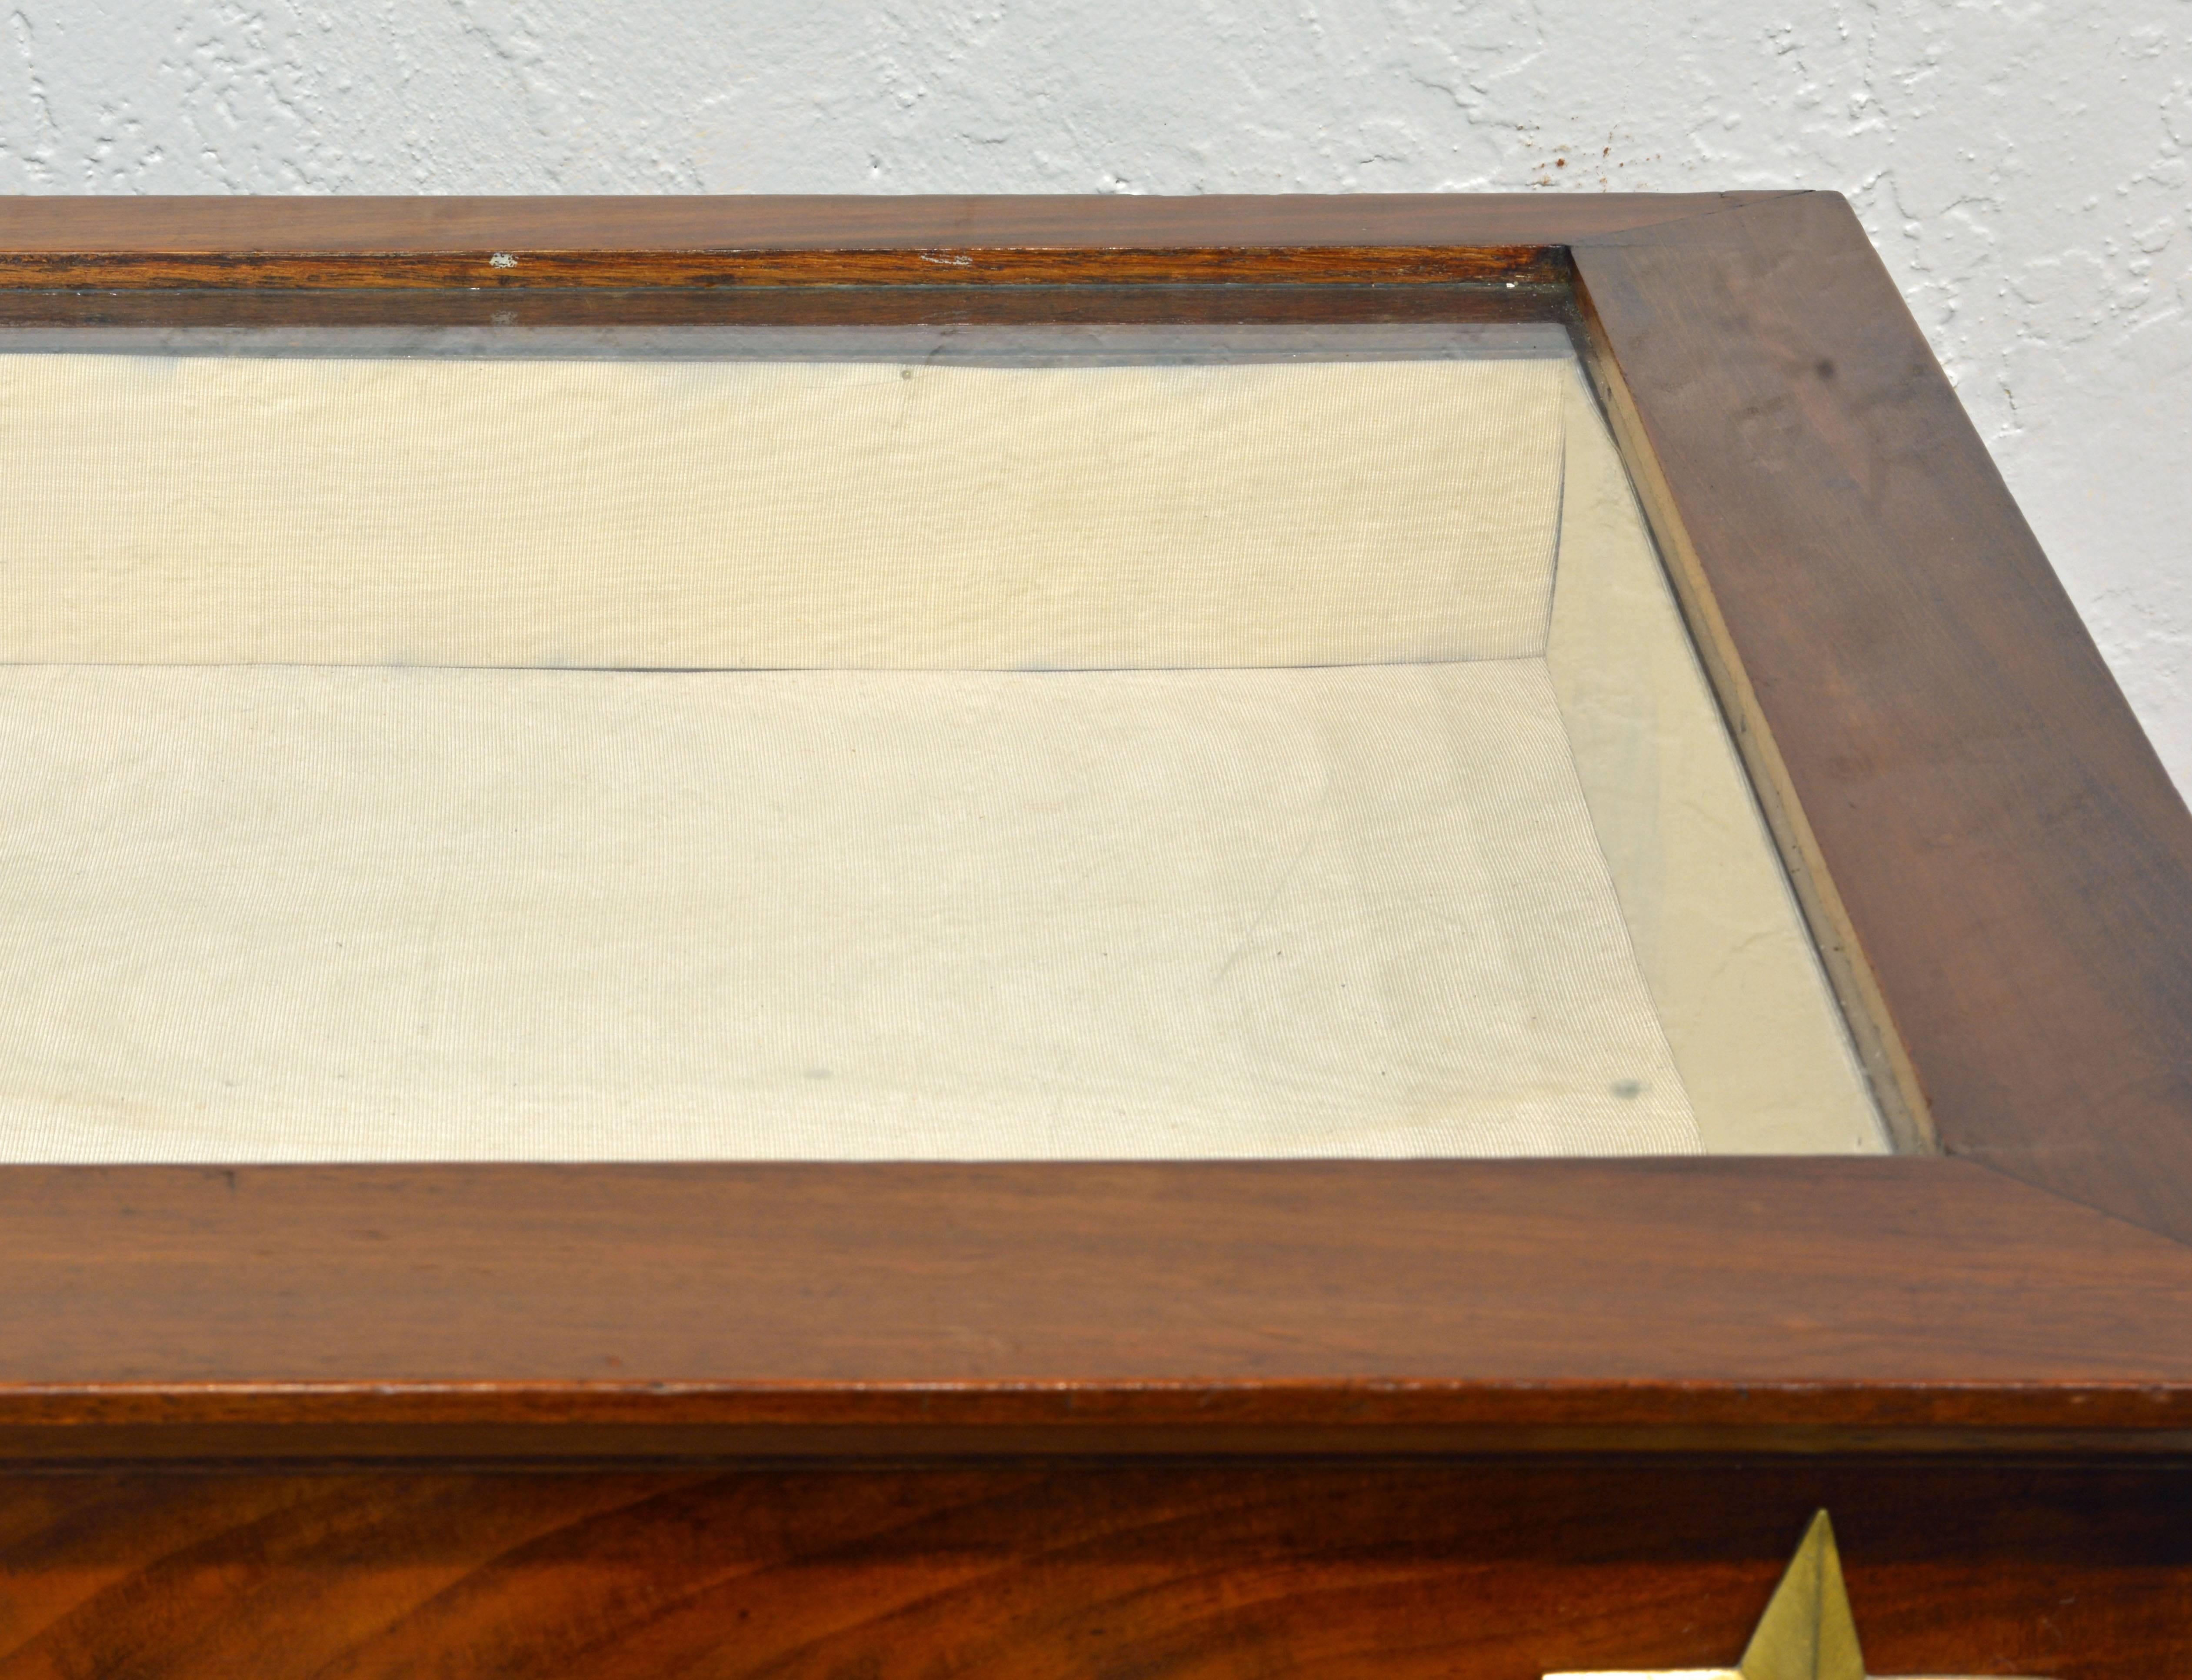 Mirror 19th Century French Empire Style Egyptian Themed Mahogany Vitrine Console Table